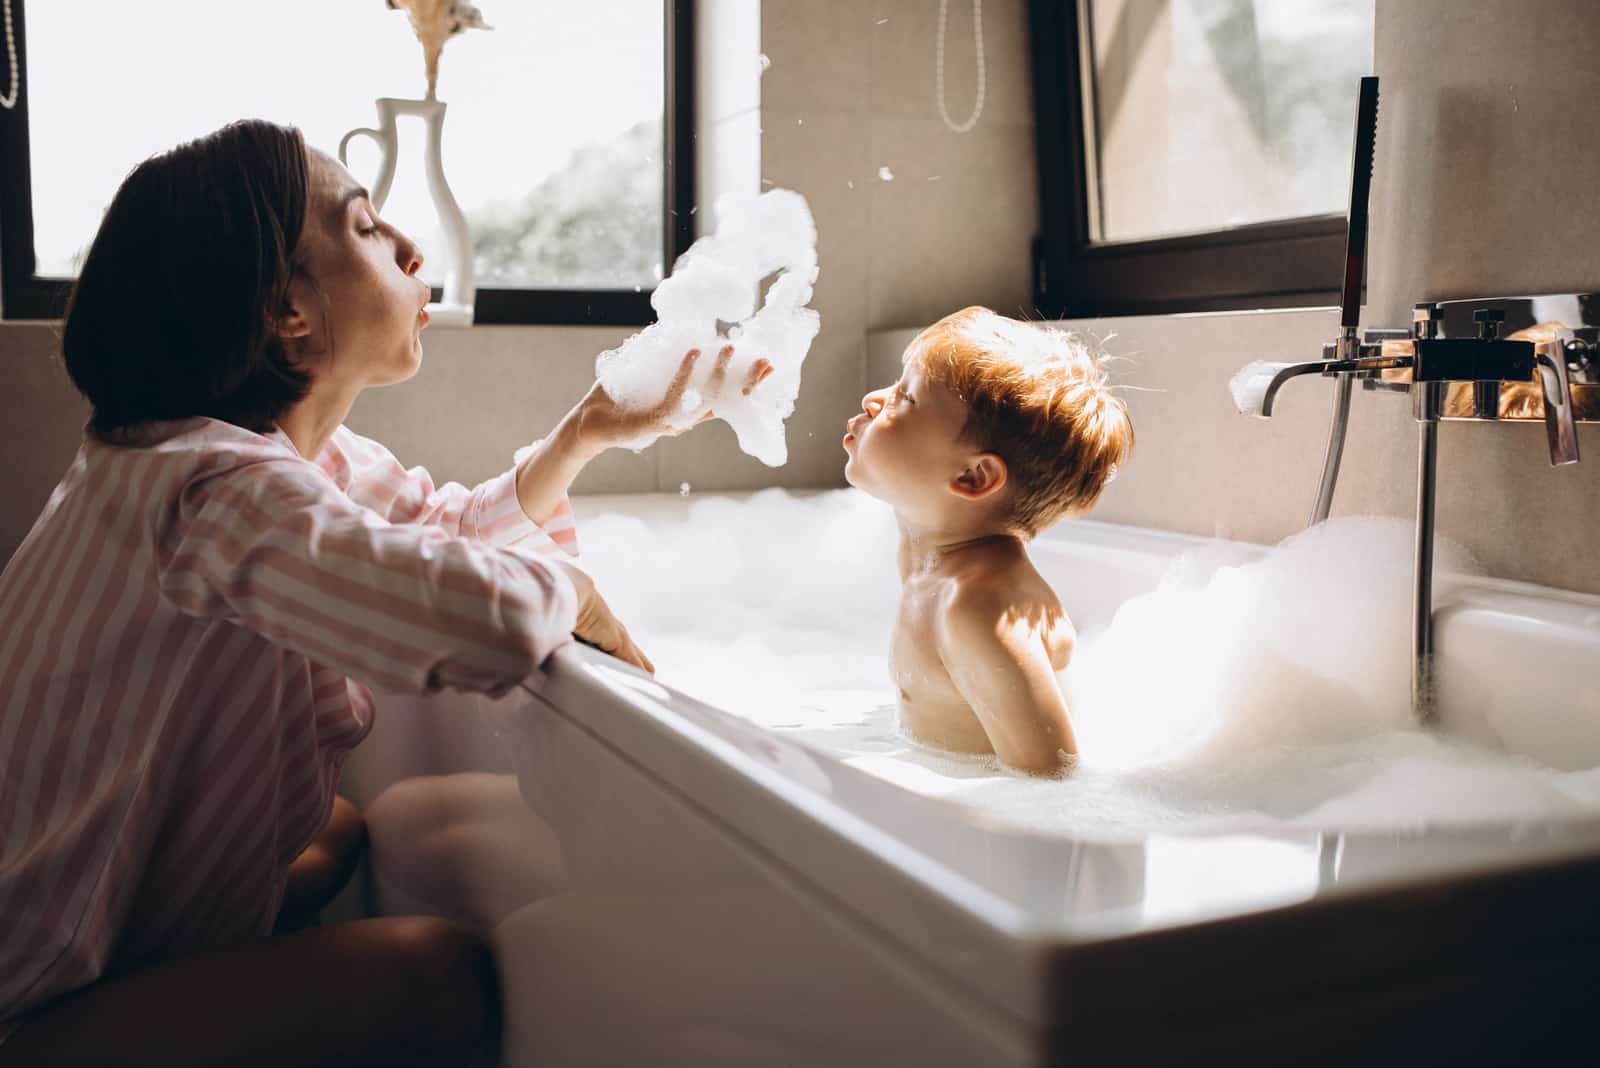 une femme jouant avec un enfant se baignant dans une baignoire